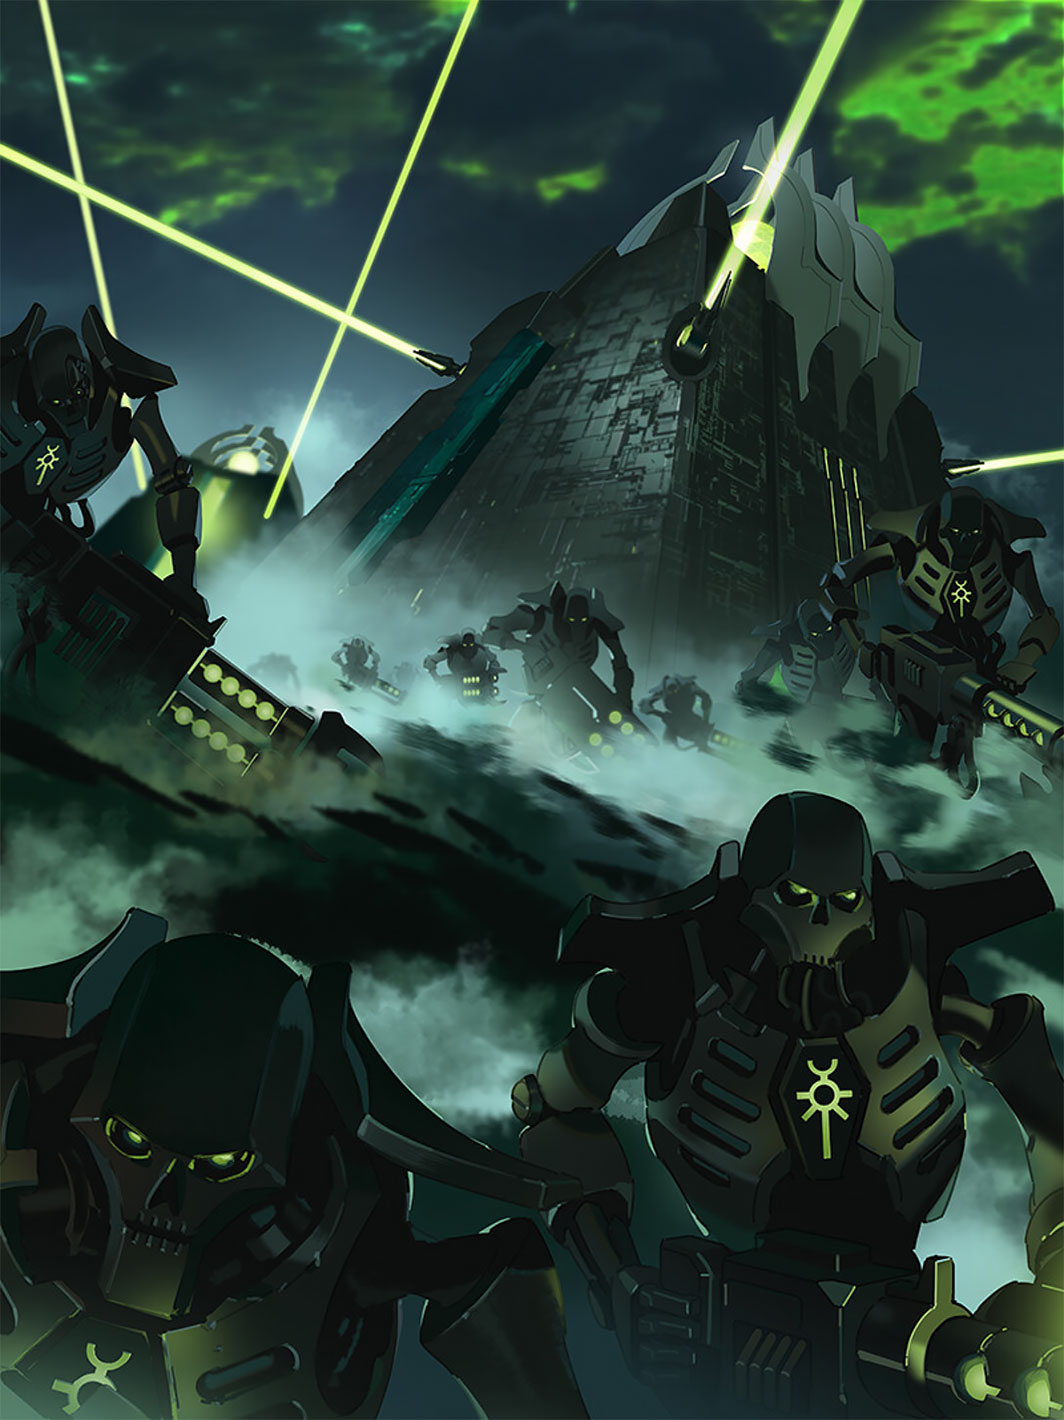 Black Warhammer 40 000 Warhammer Monolith Mist Gun Weapon Green Eyes Science Fiction Portrait Displa 1064x1420